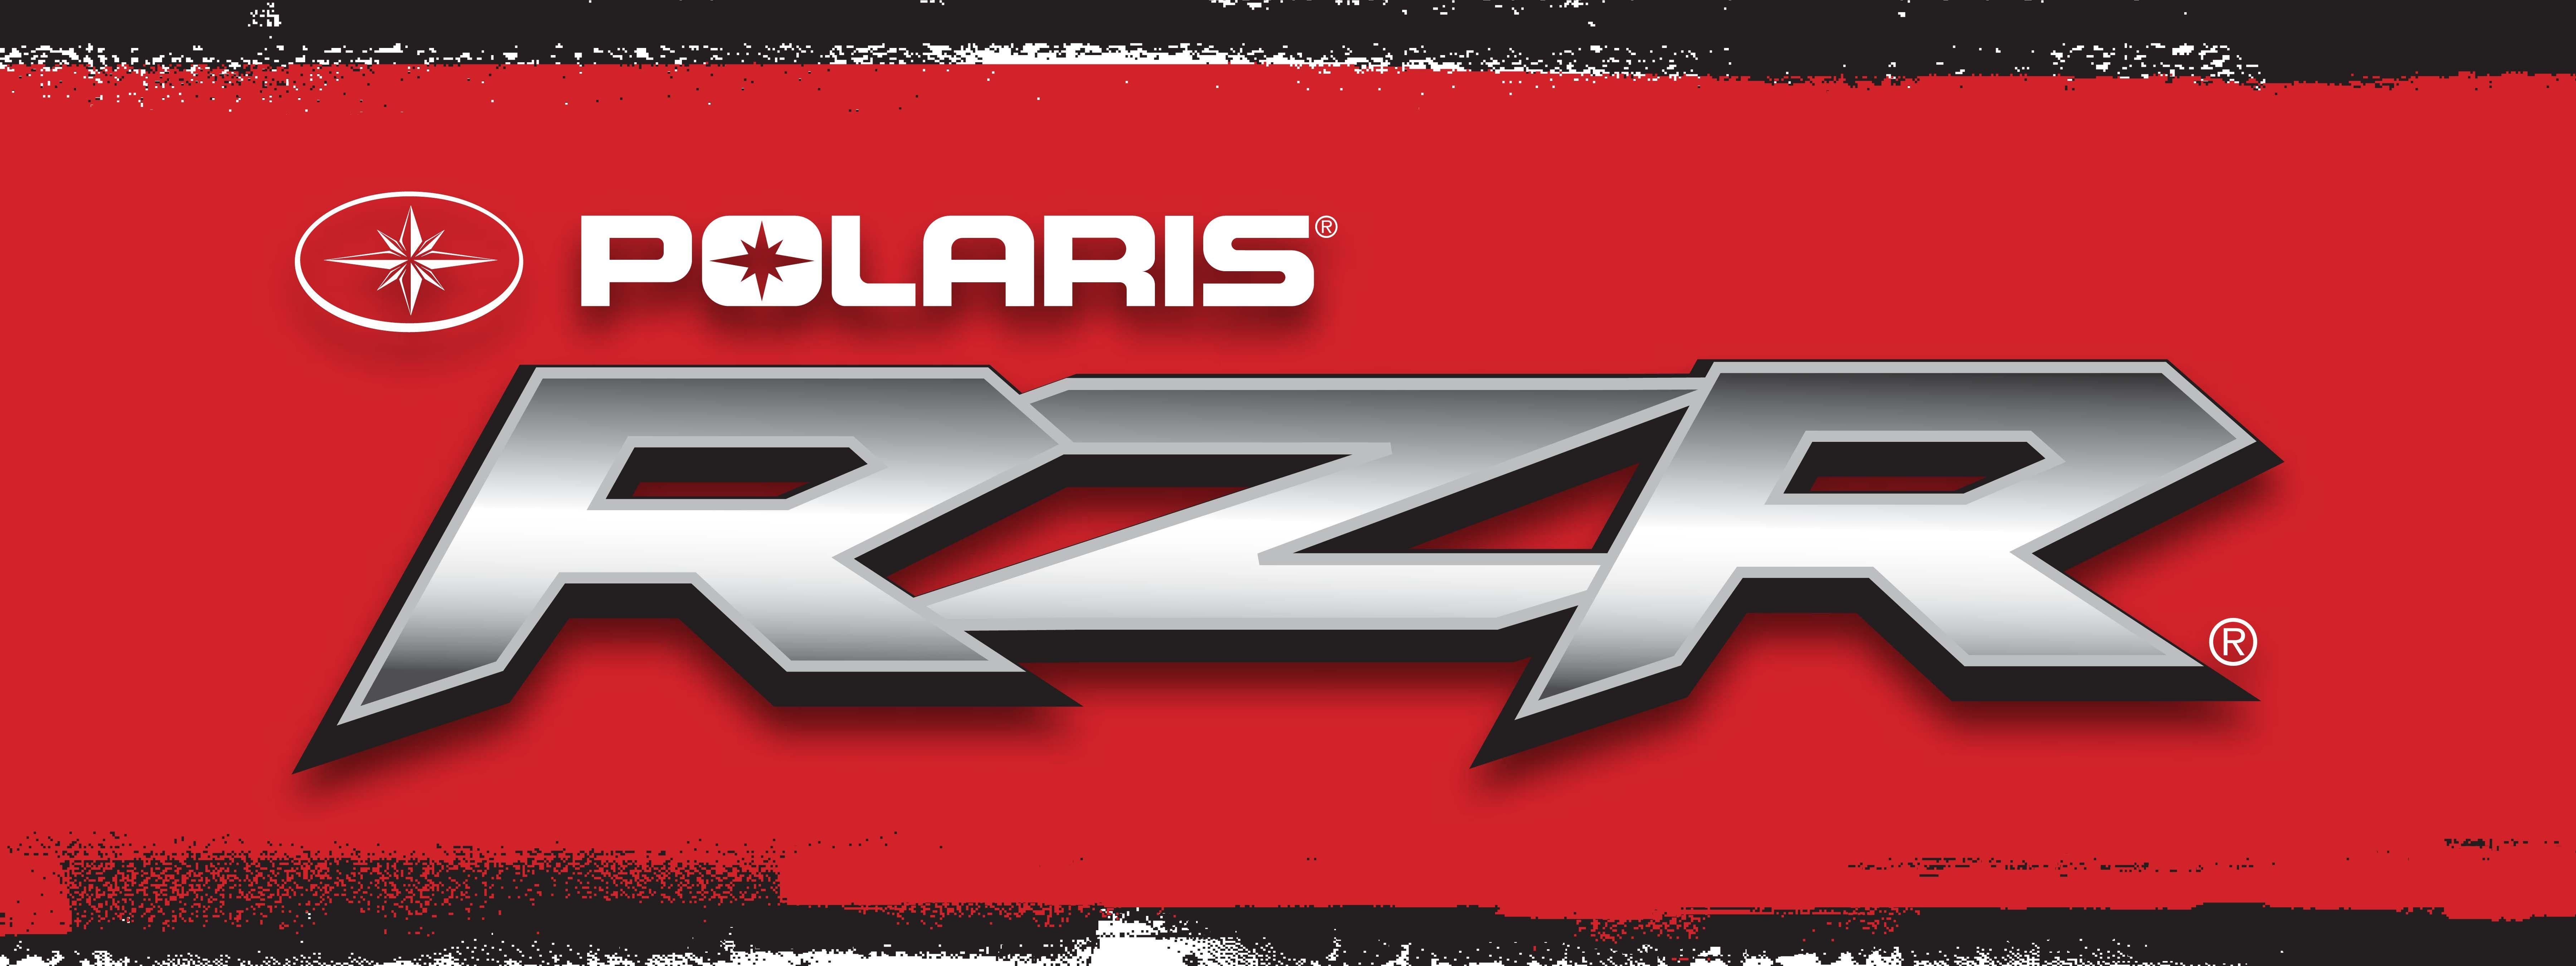 RZR Logo - Polaris Rzr Logo Tag Walts Outdoor Center